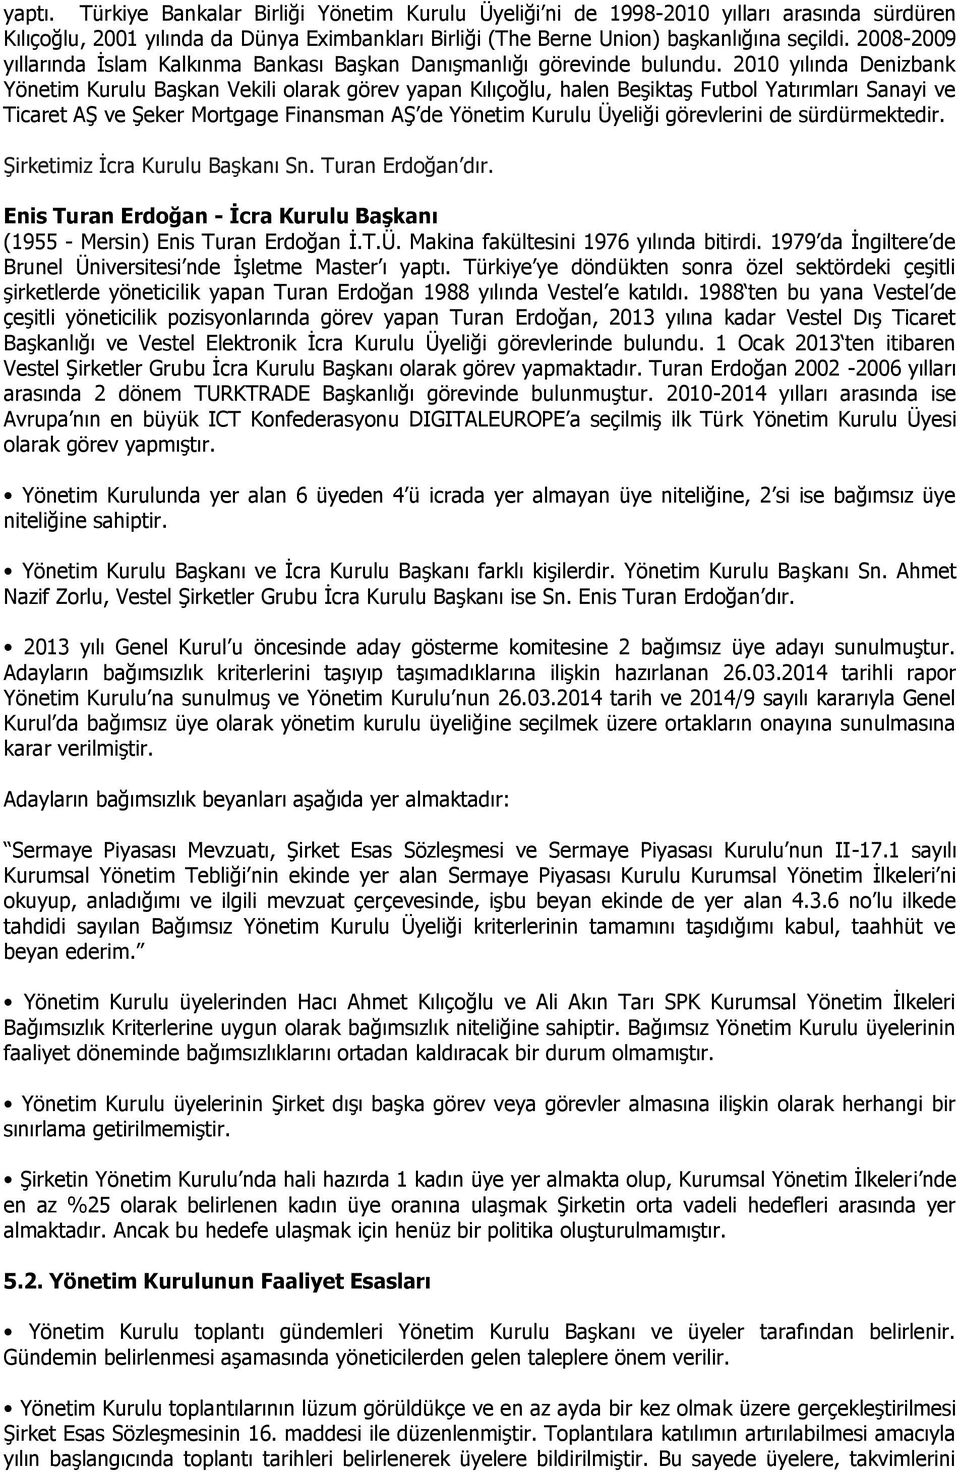 2010 yılında Denizbank Yönetim Kurulu Başkan Vekili olarak görev yapan Kılıçoğlu, halen Beşiktaş Futbol Yatırımları Sanayi ve Ticaret AŞ ve Şeker Mortgage Finansman AŞ de Yönetim Kurulu Üyeliği